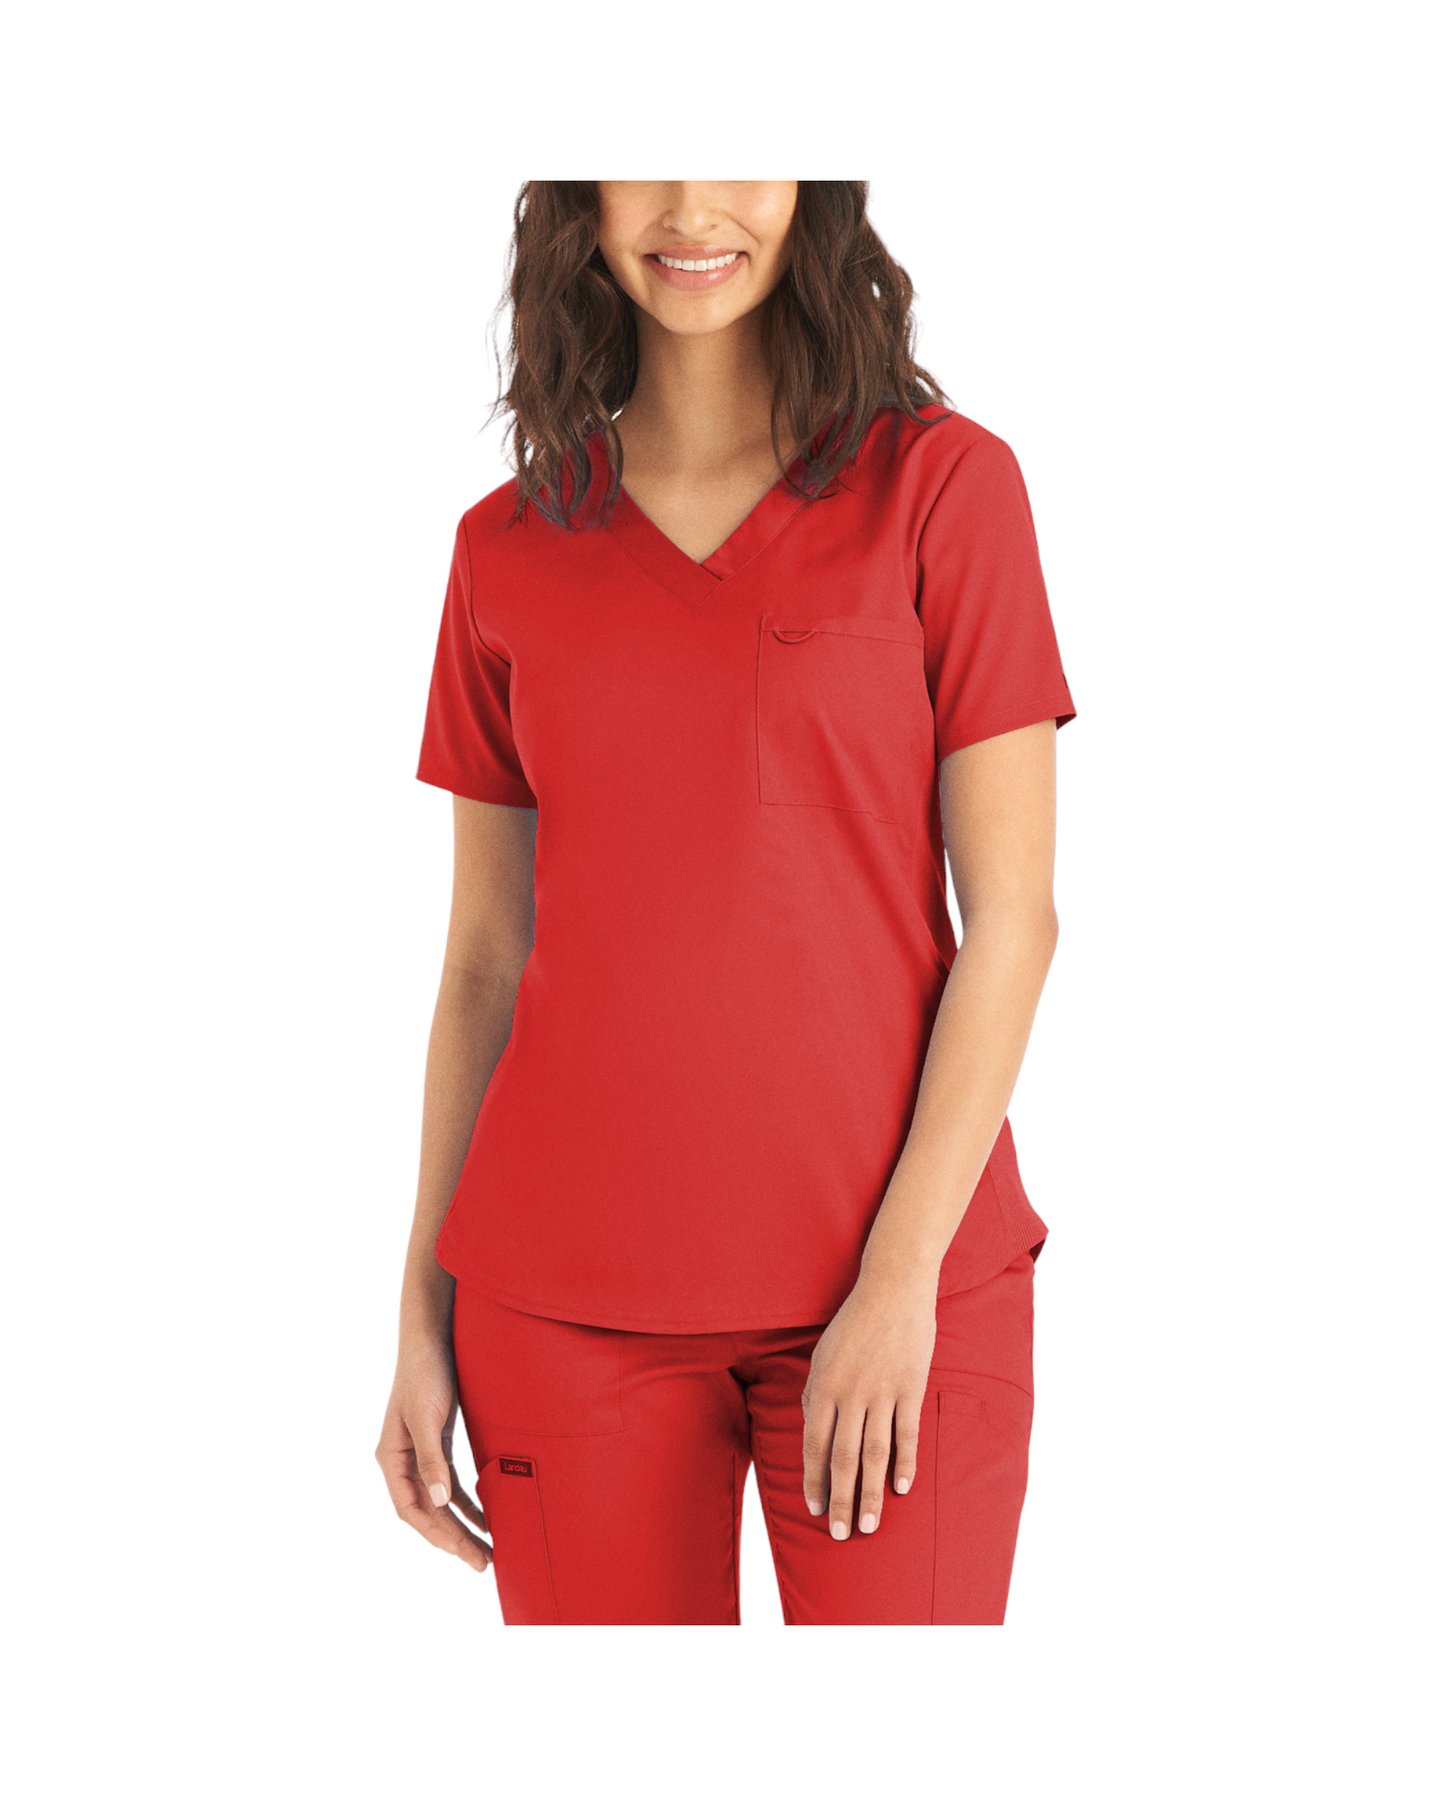 Haut d'uniformes à col en V coupe moderne pour femme avec des coutures princesses.  Landau Proflex #LT107 couleur Rouge.